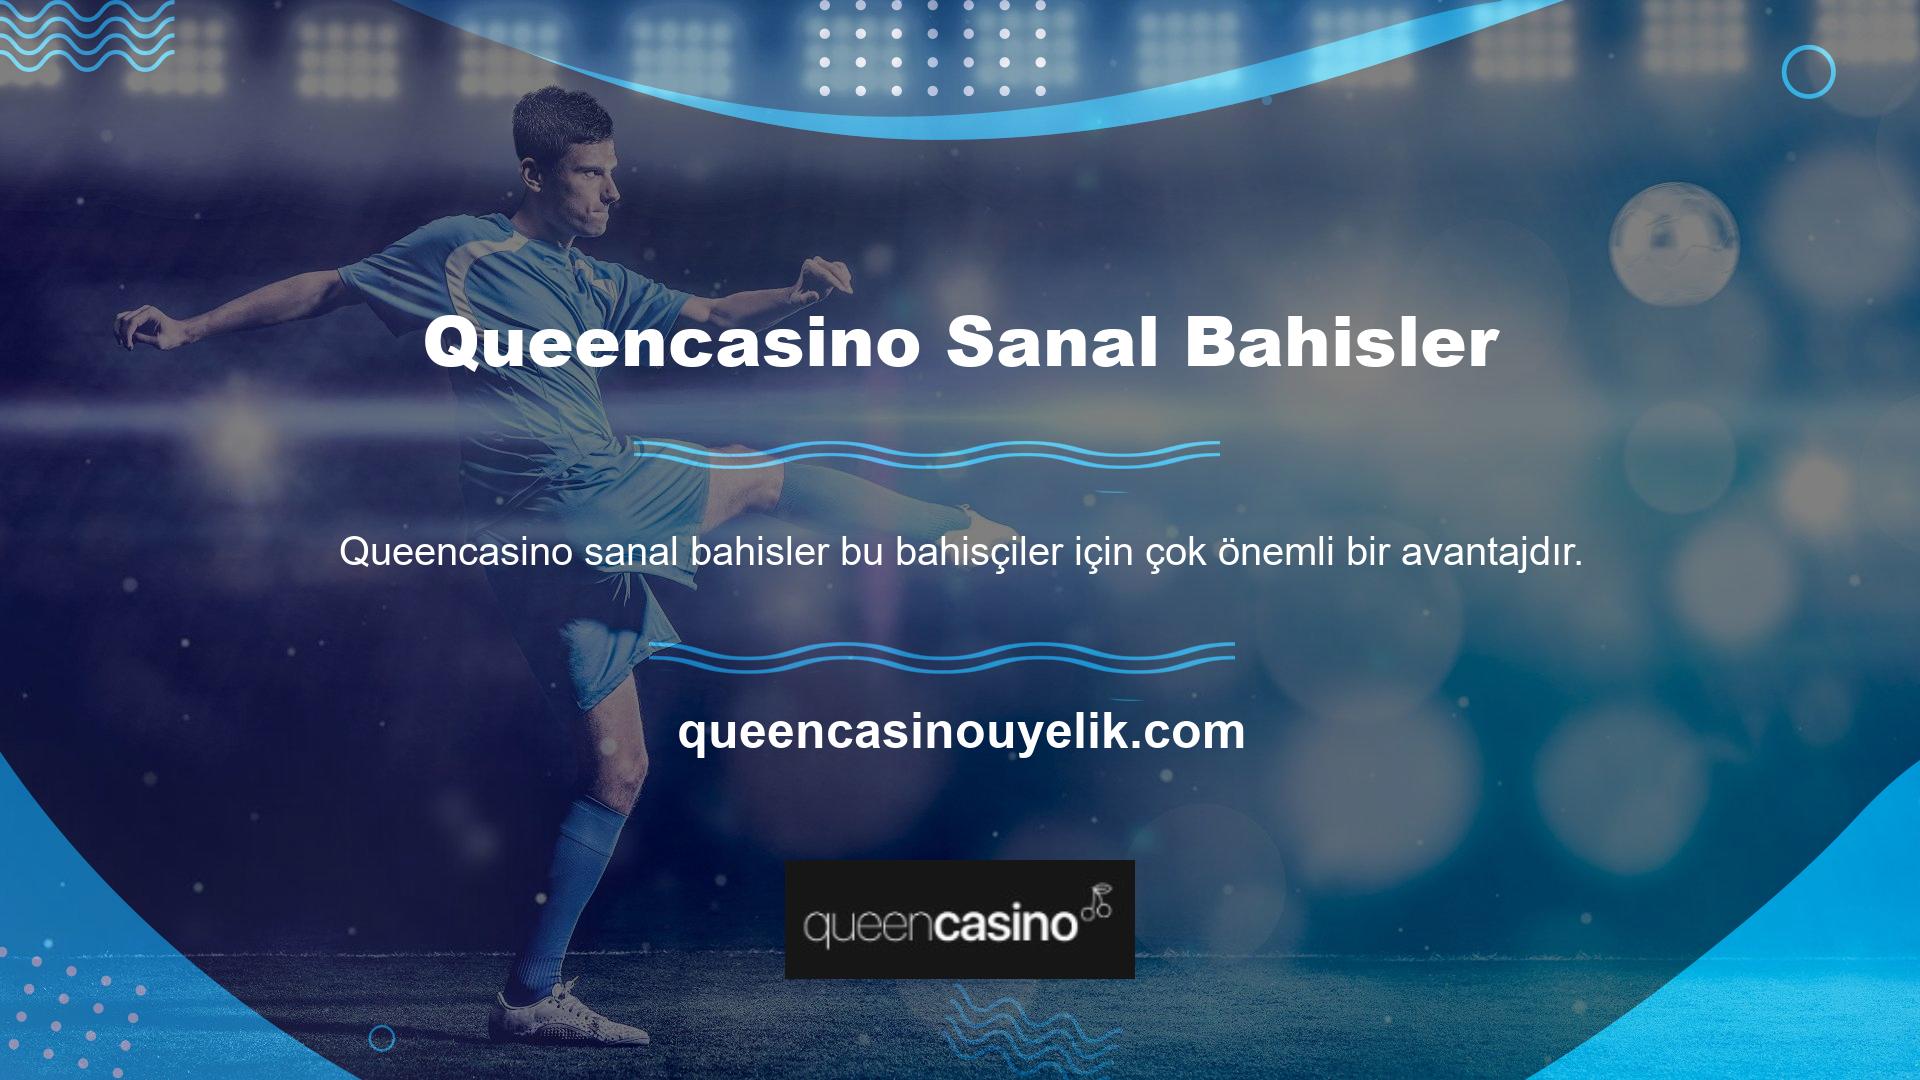 Queencasino aynı zamanda yeni casino oyunları sağlamasıyla da tanınmaktadır